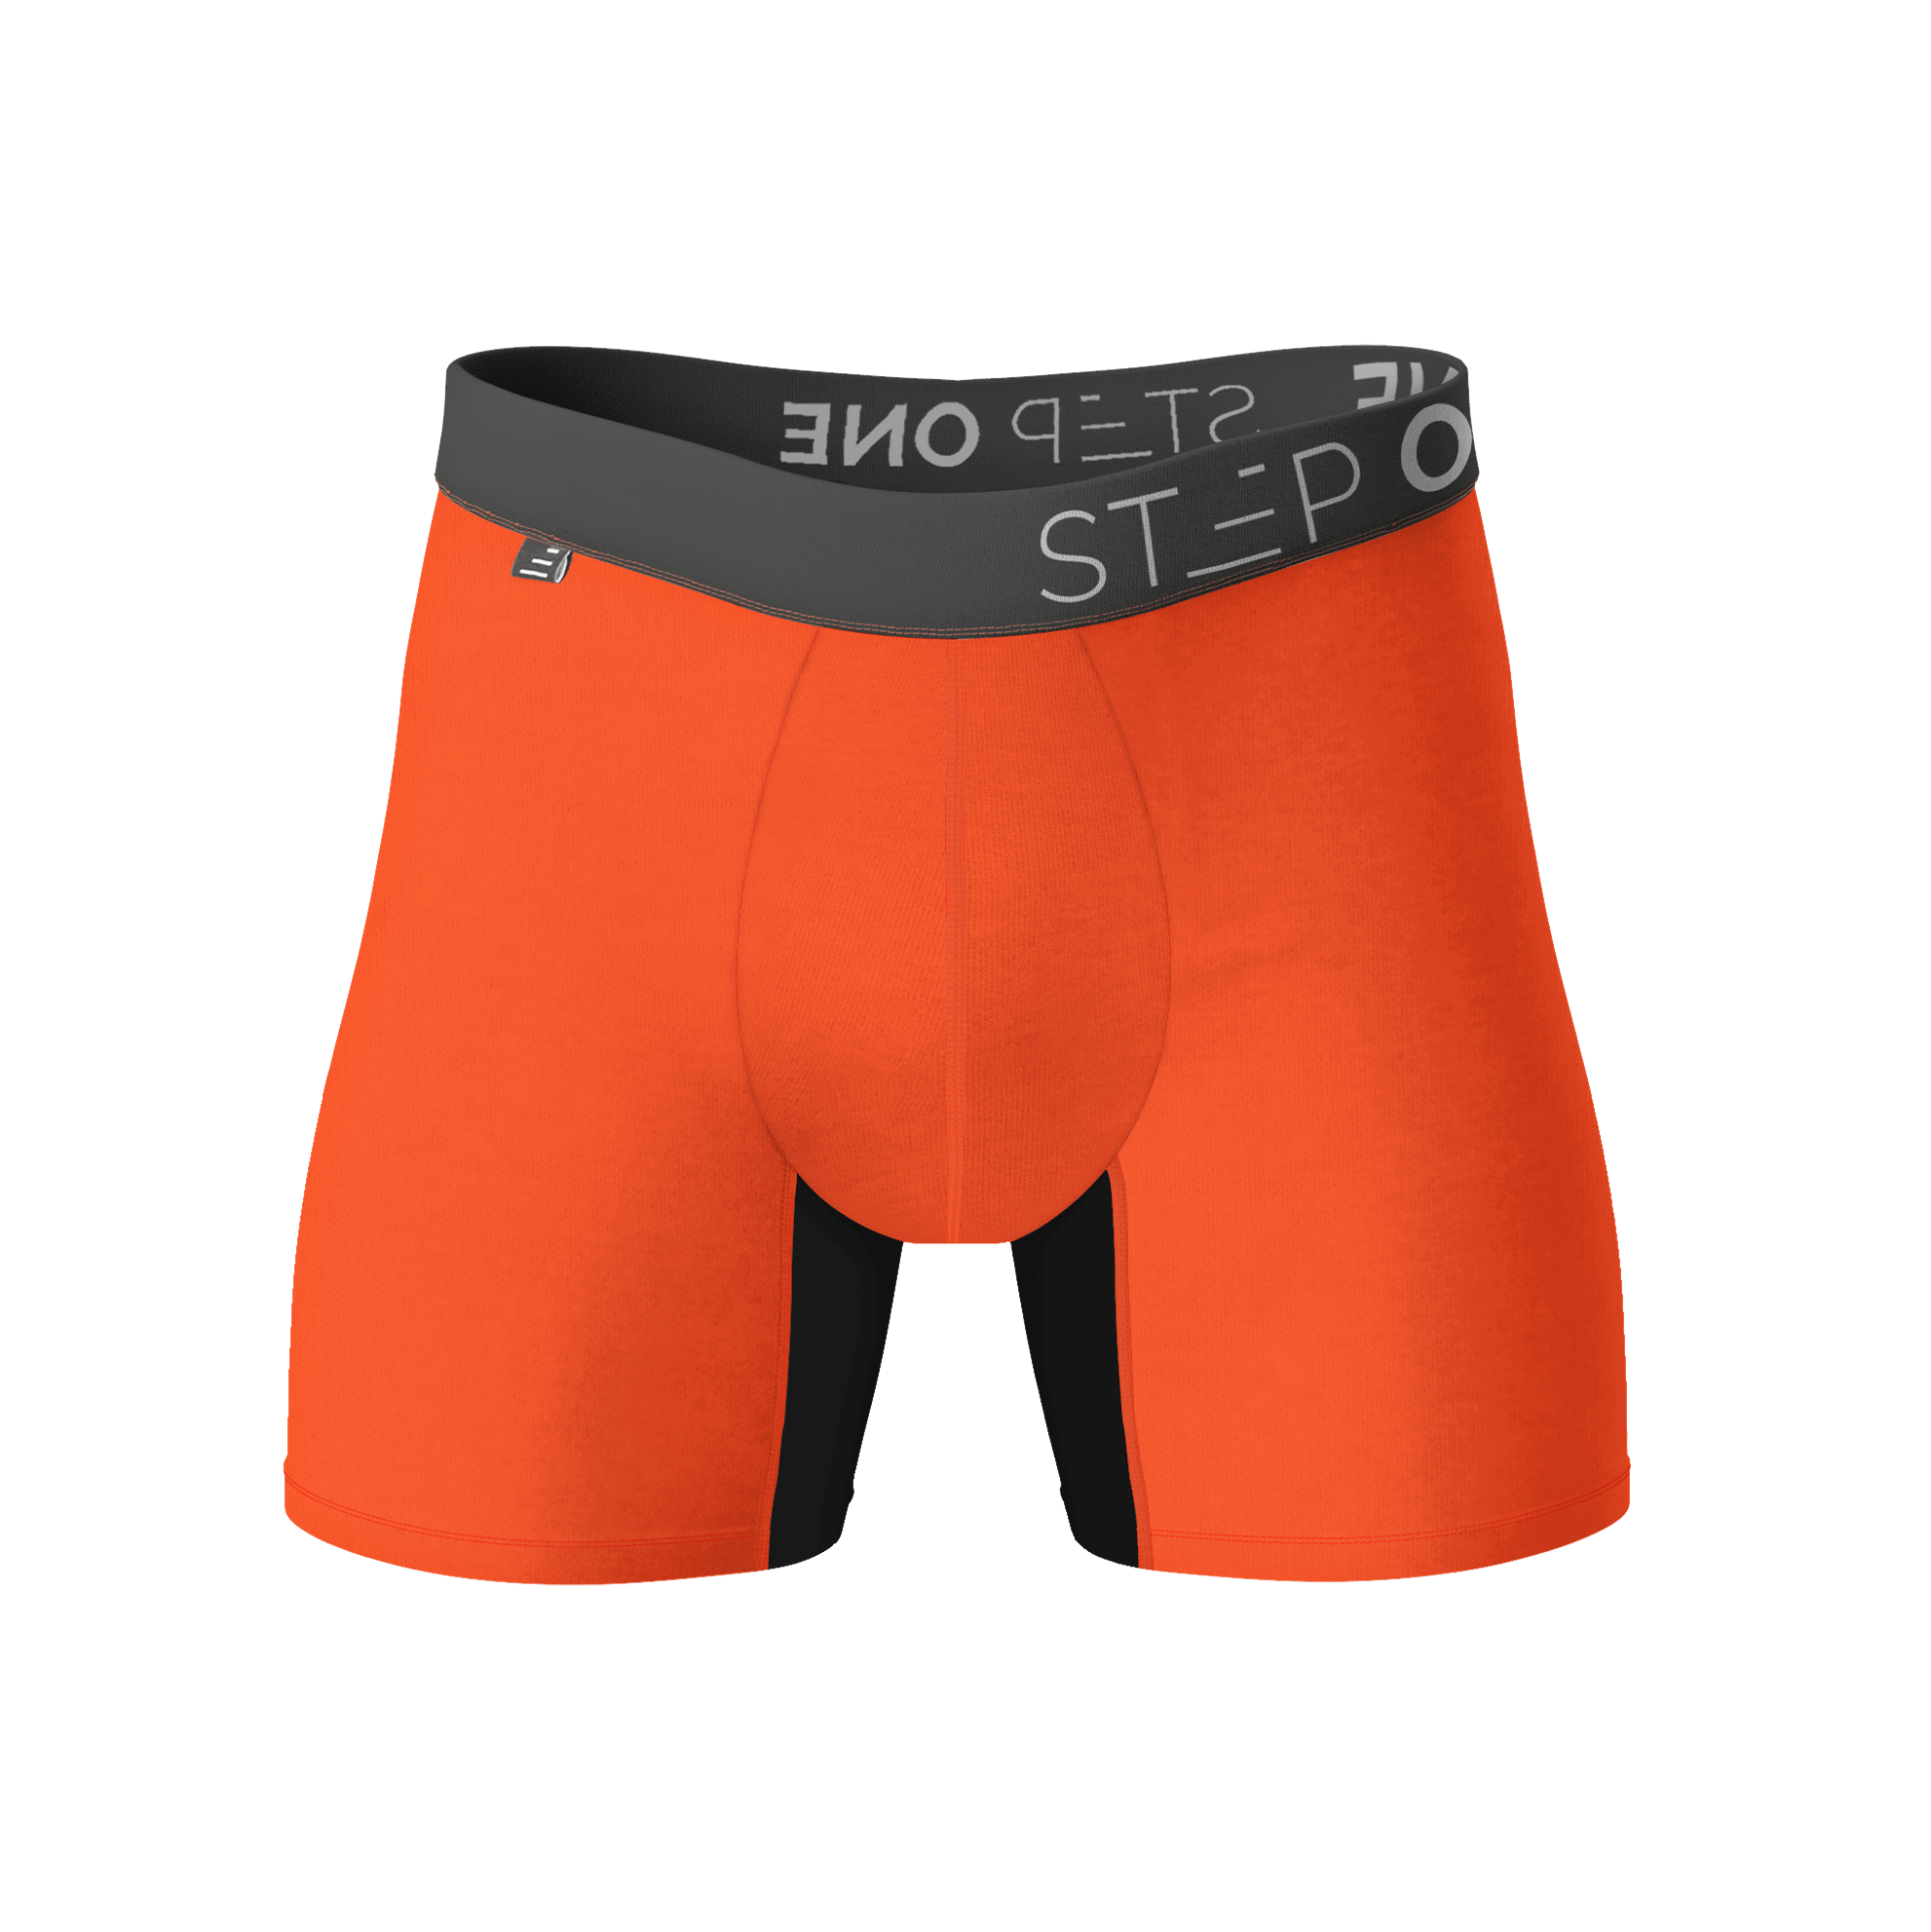 Buy short trunks online  Best Underwear for men - Step One